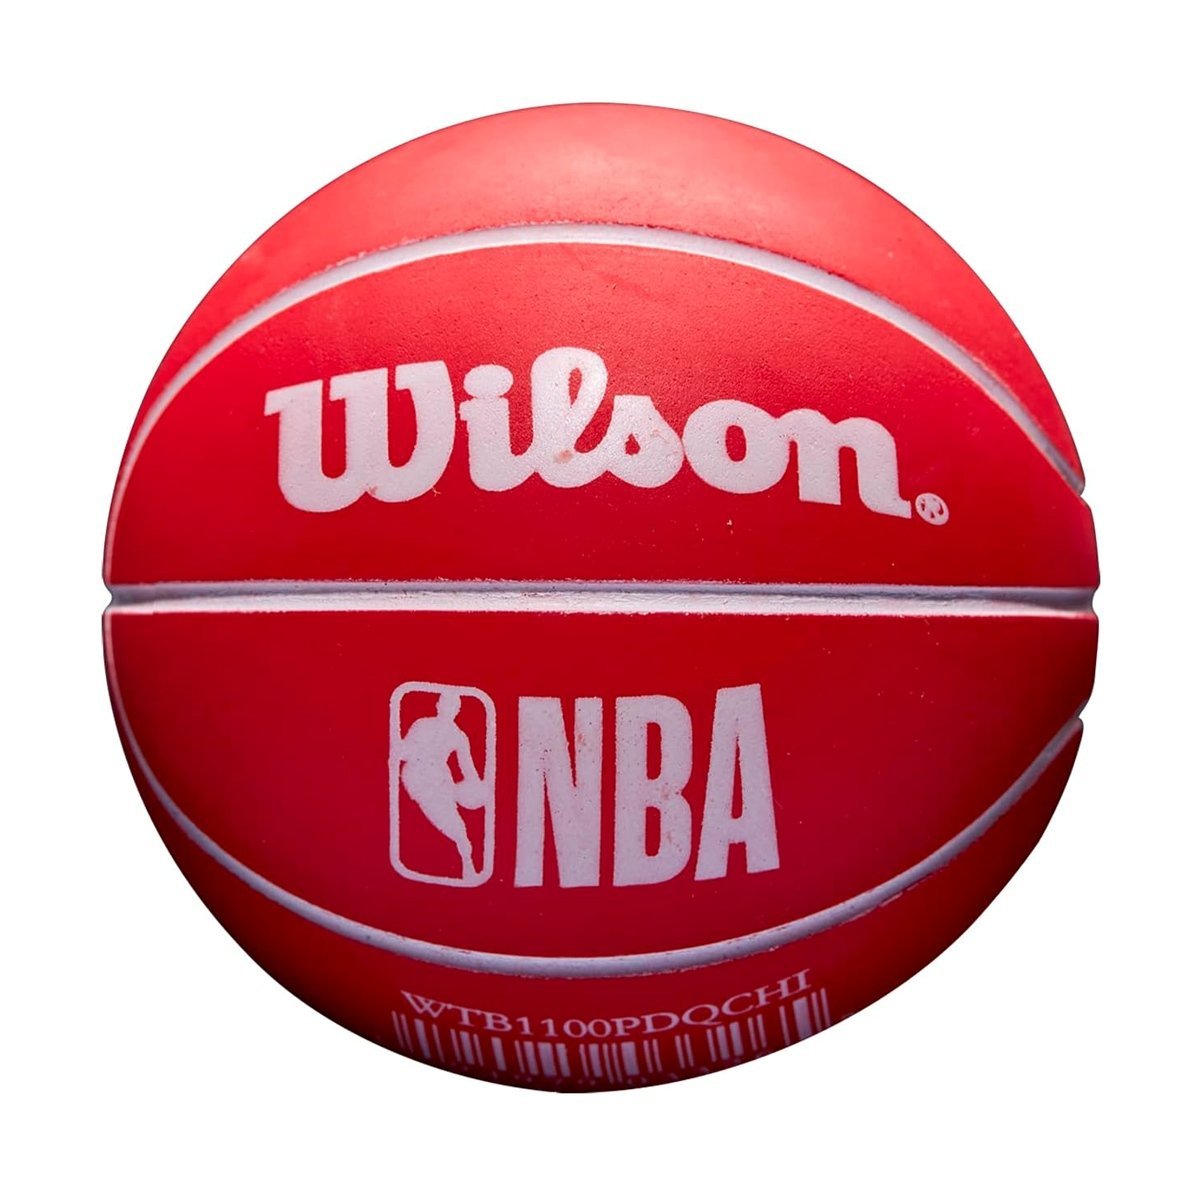 Lopta Wilson NBA Dribbler Bskt Chi Bulls - červená